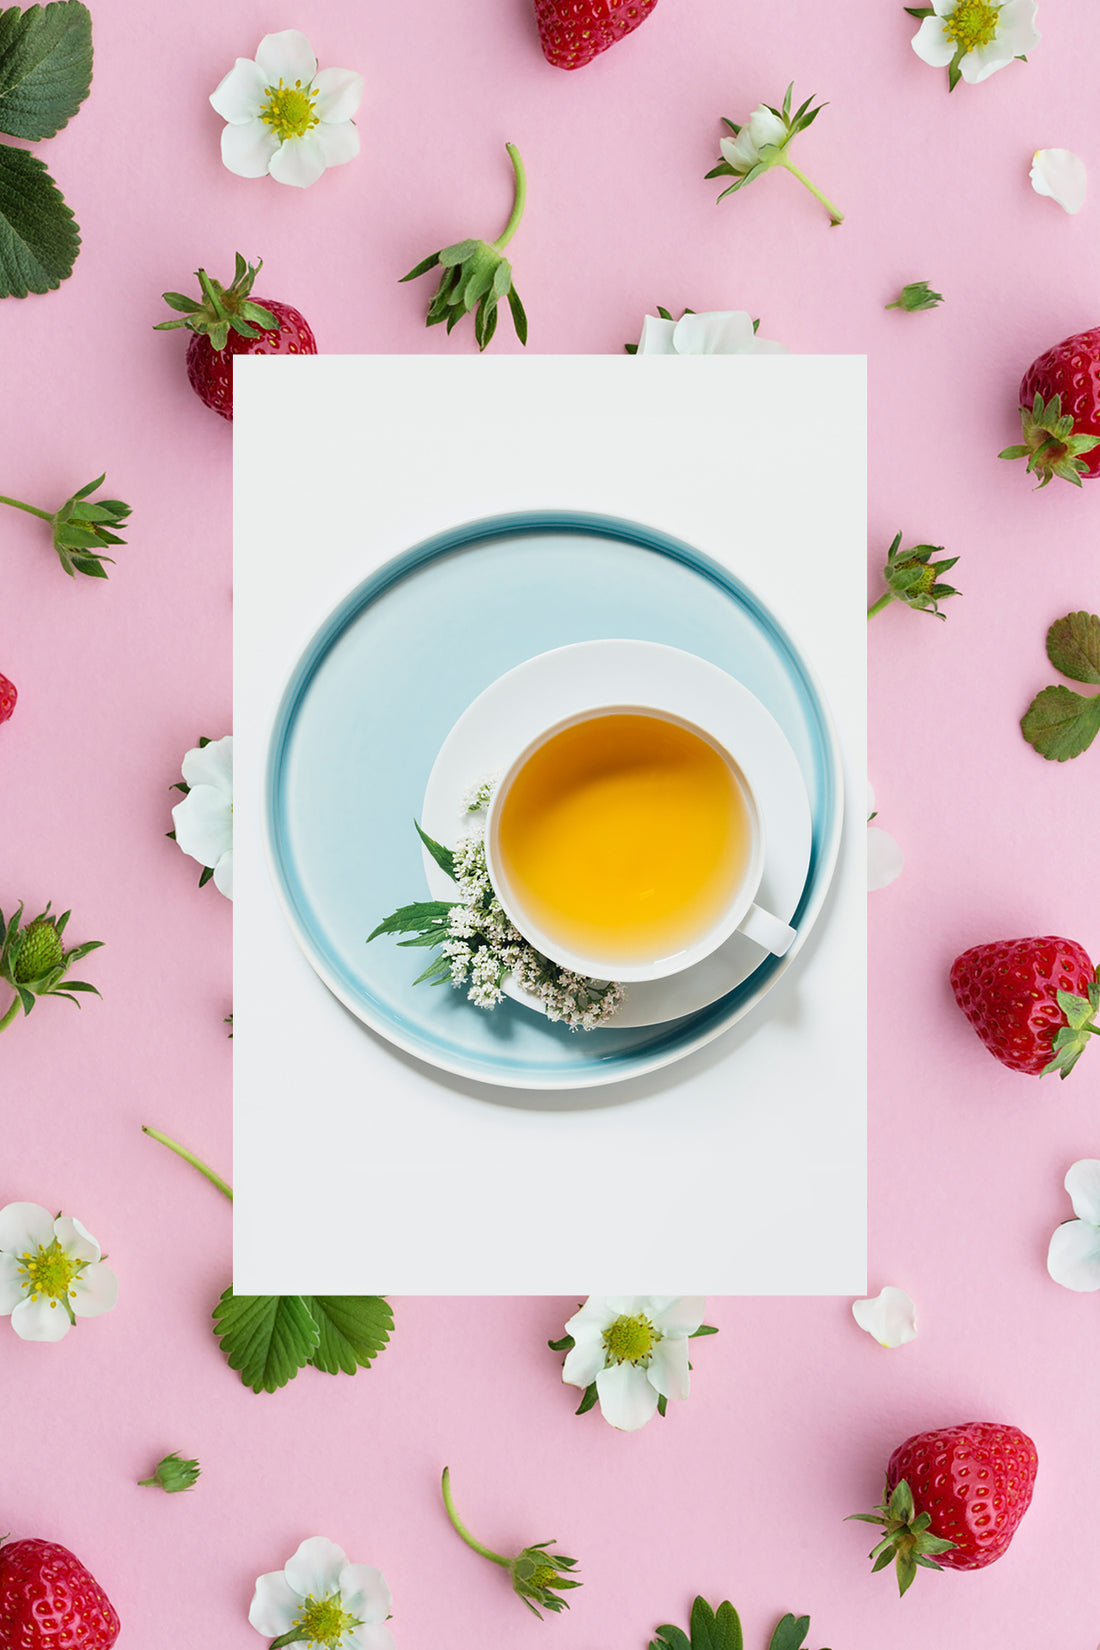 strawberry white tea ingredient